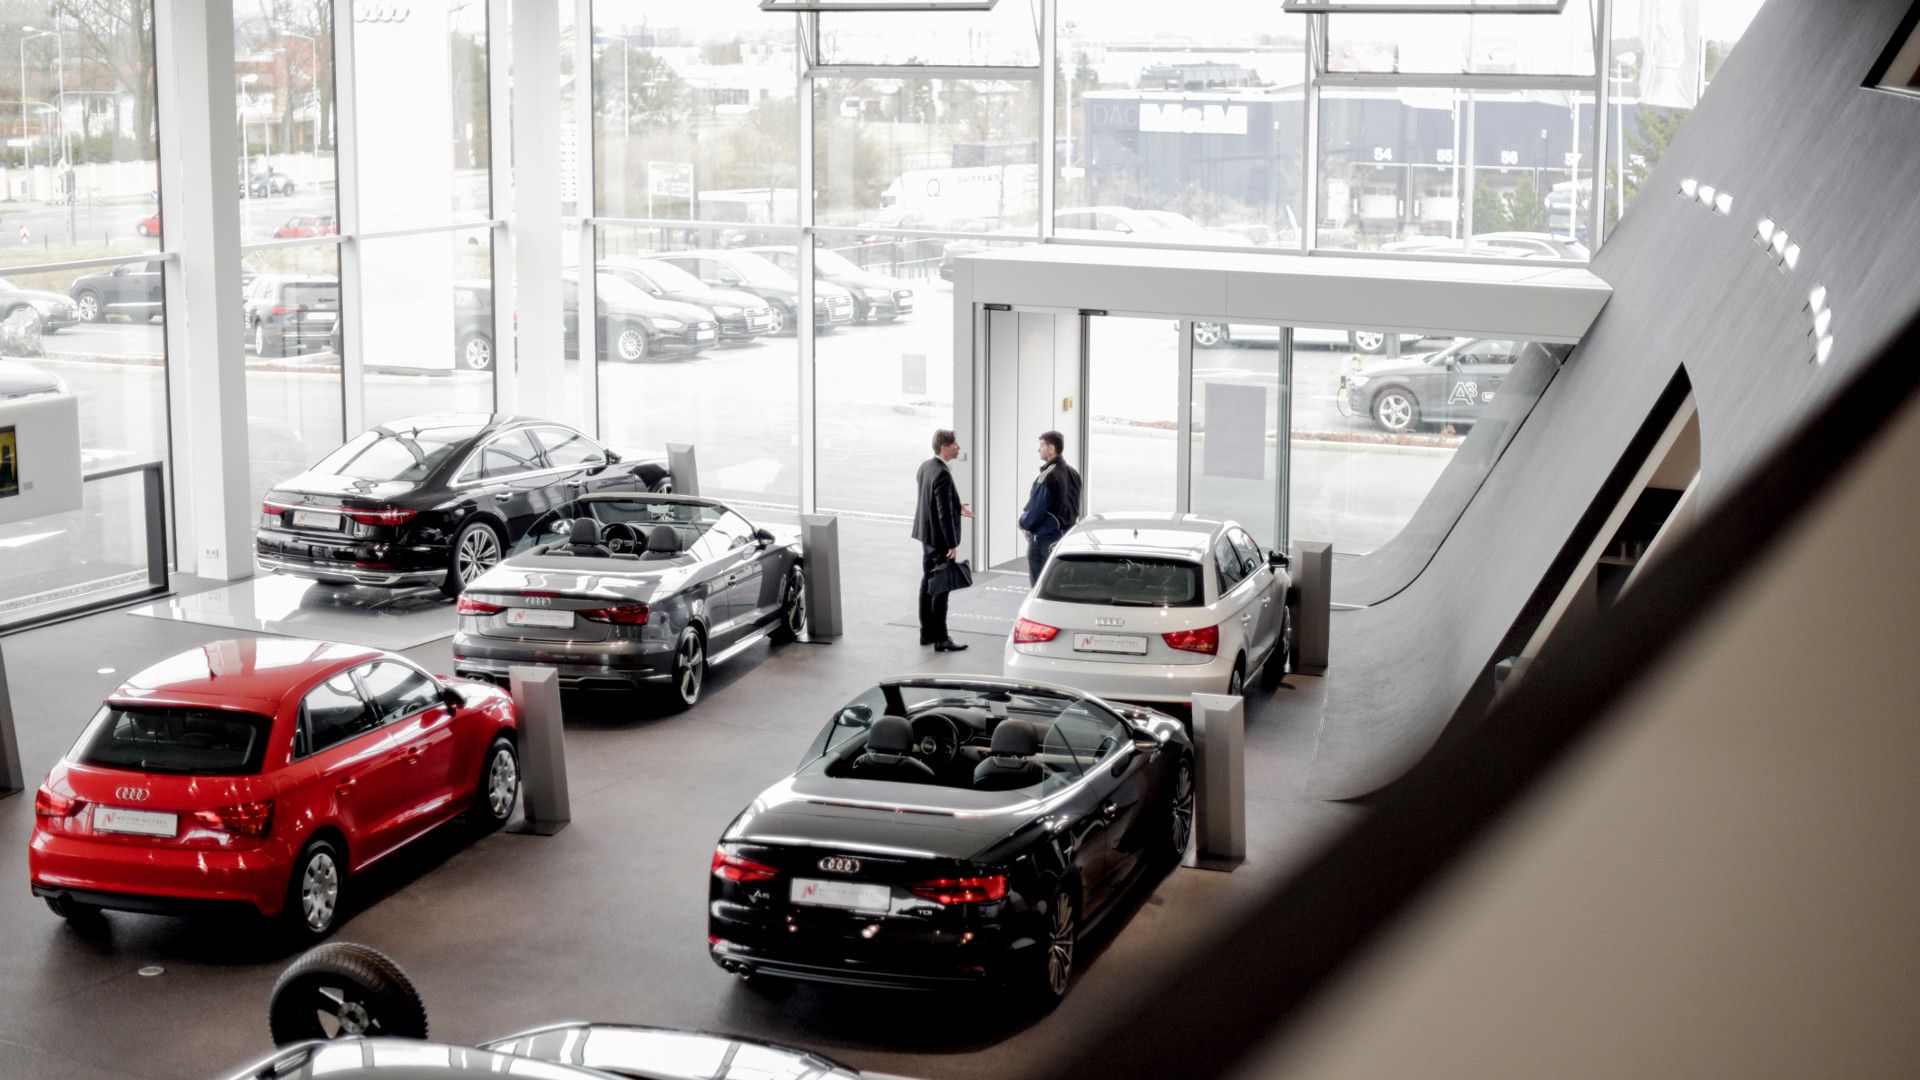  Das 2016 neu eröffnete Autohaus bietet die aktuelle Audi Modellpalette zum Probe-sitzen. 